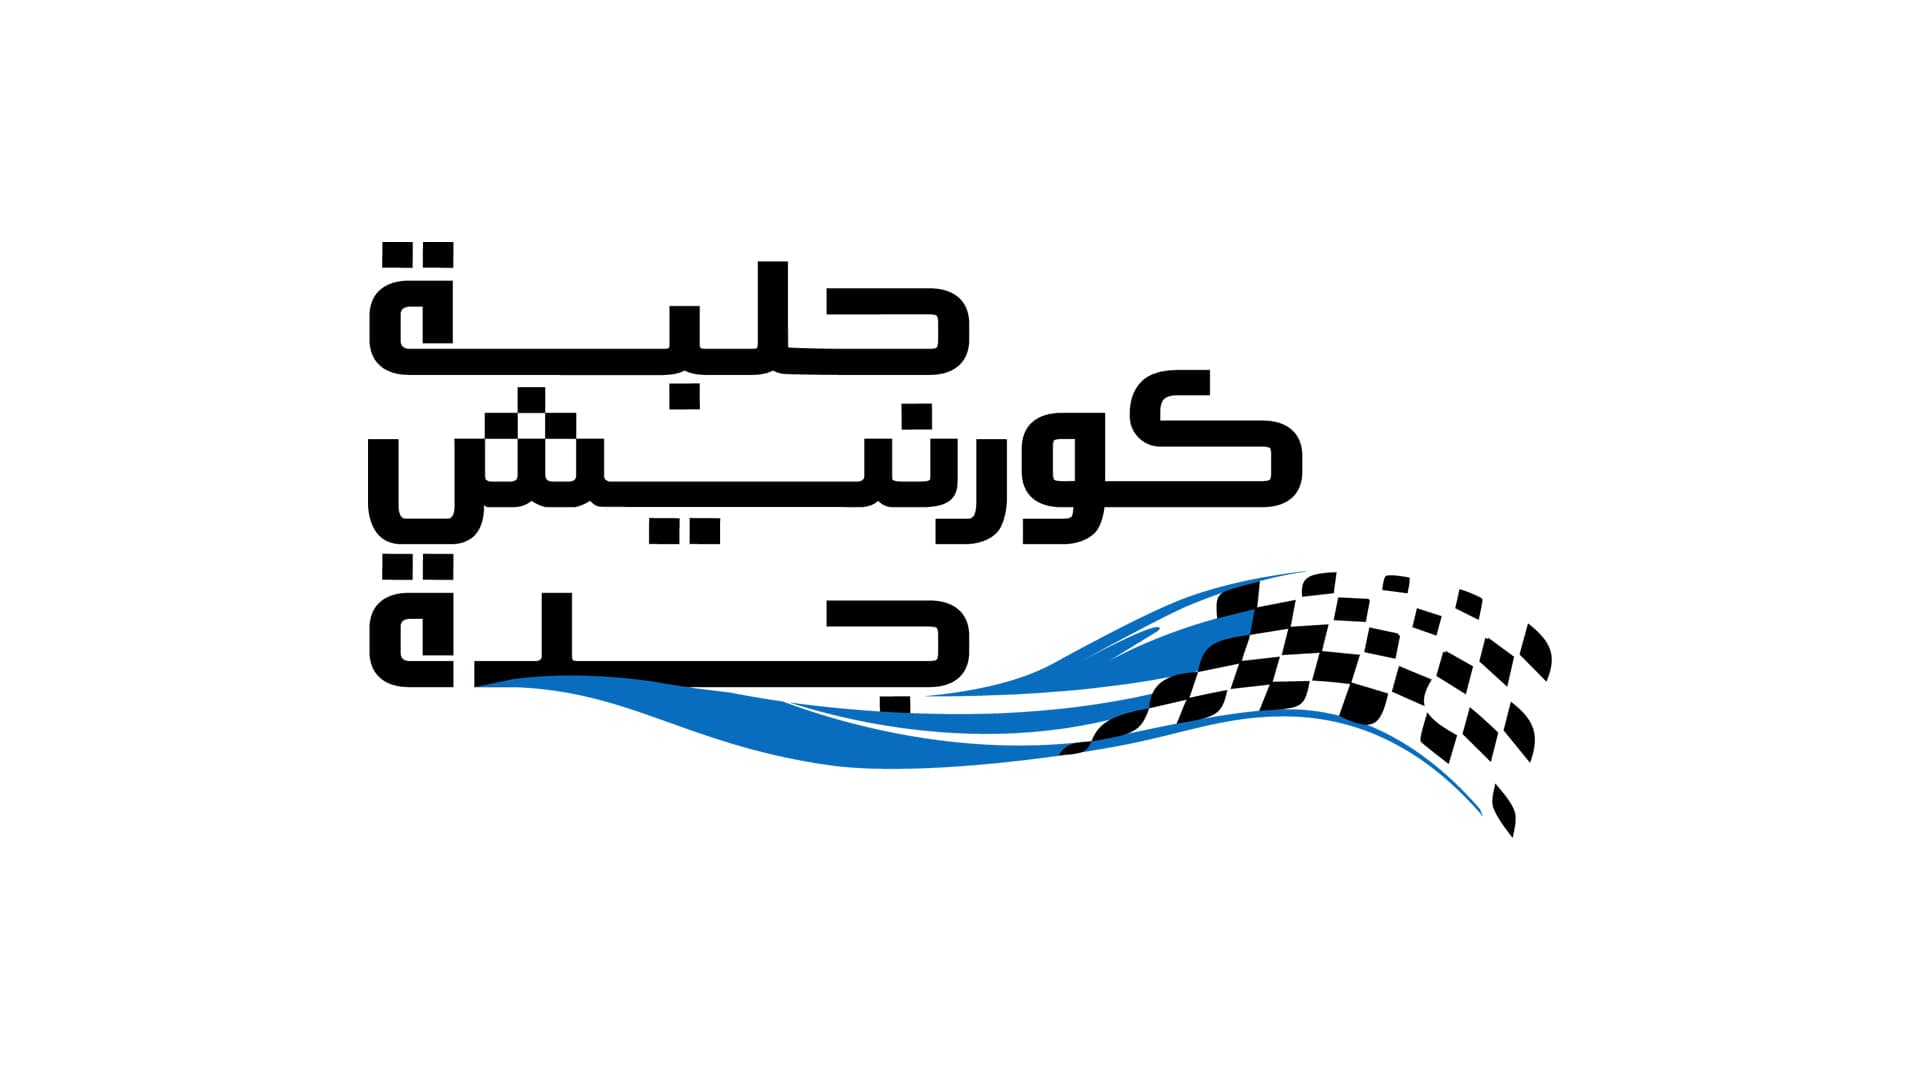 كشف النقاب عن شعار حلبة كورنيش جدة استعداداً لانطلاق جائزة السعودية الكبرى STC للفورمولا 1 لموسم 2021 قبل شهرين على انطلاق الحدث المرتقب